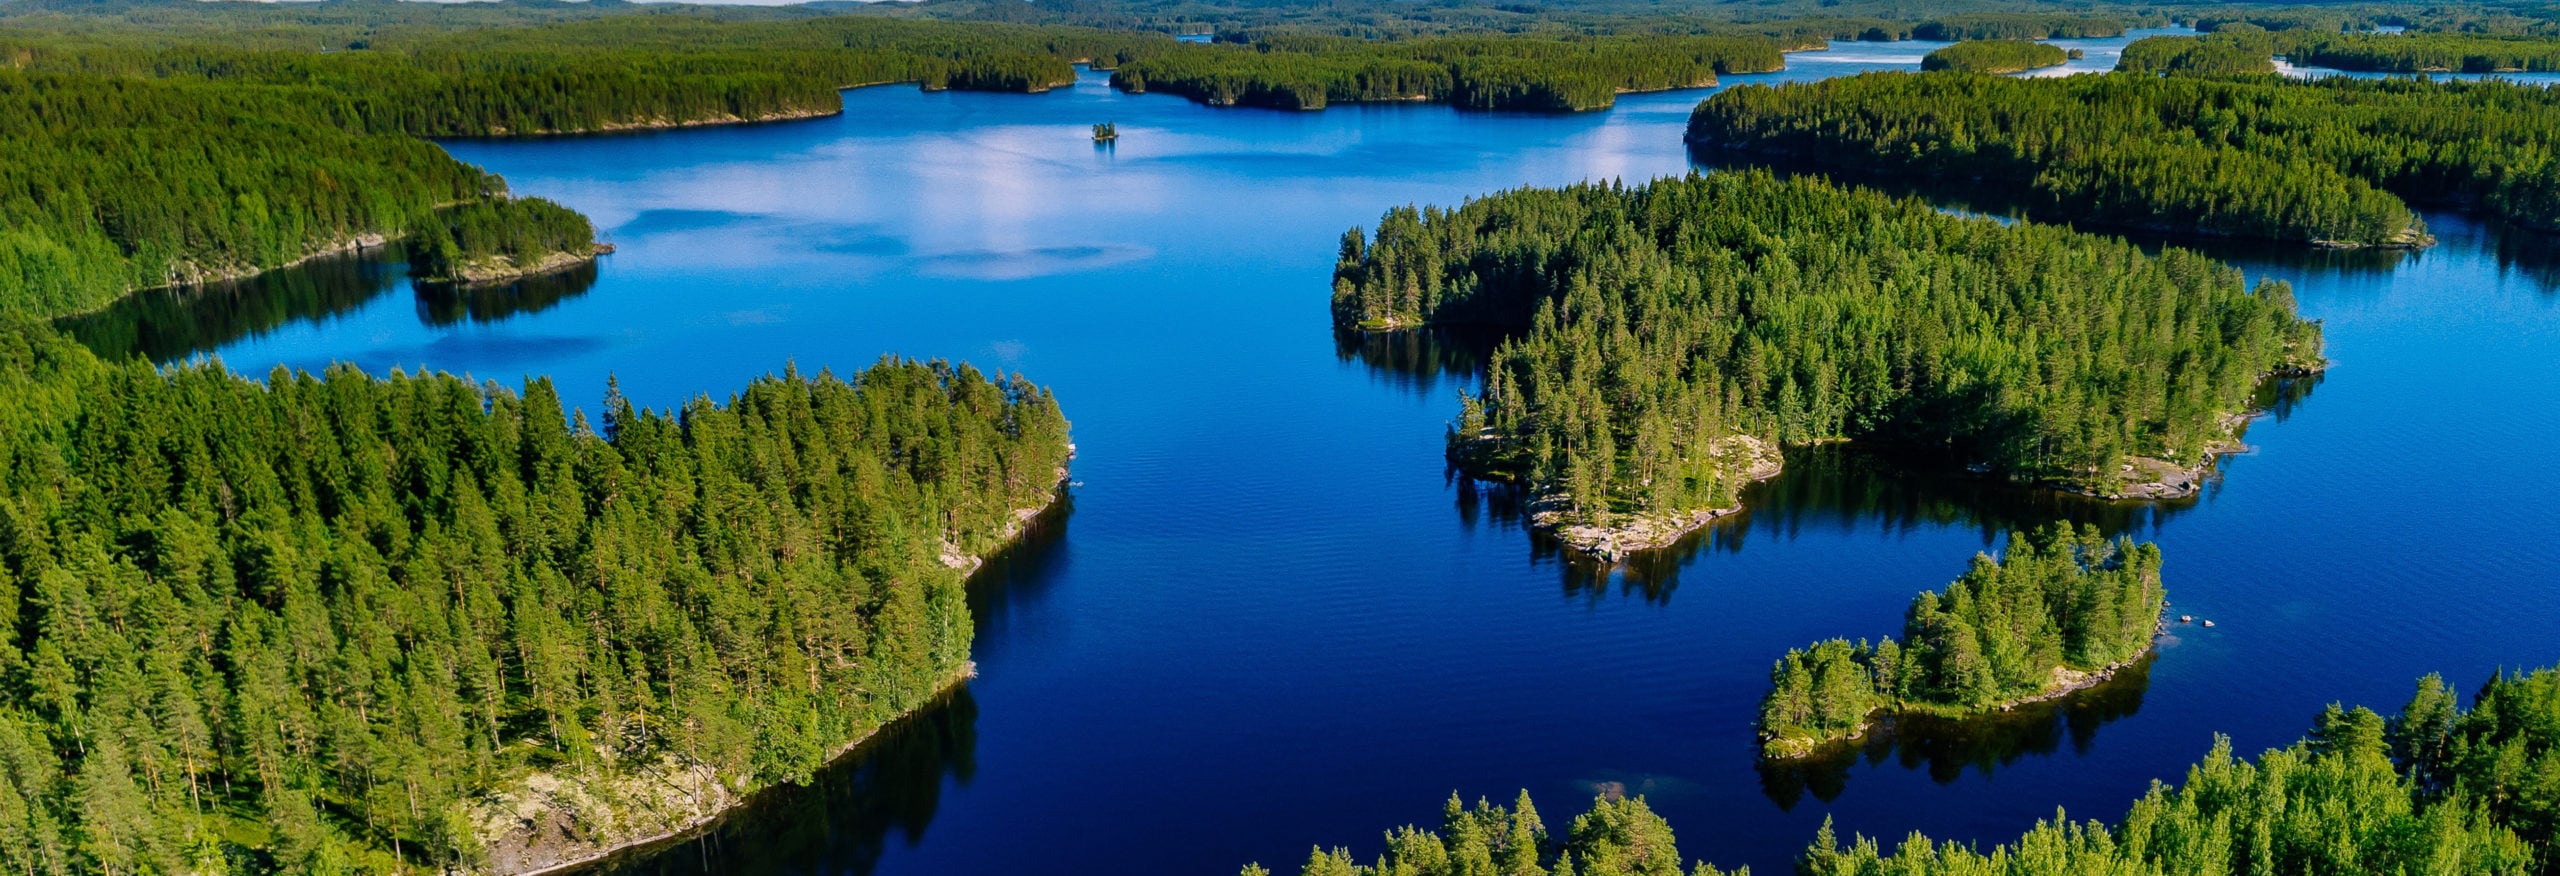 Названия финских озер. Озерное плато Финляндии. Финляндия Страна тысячи озер. Финляндия 1000 озер. Озеро Лаппаярви в Финляндии.